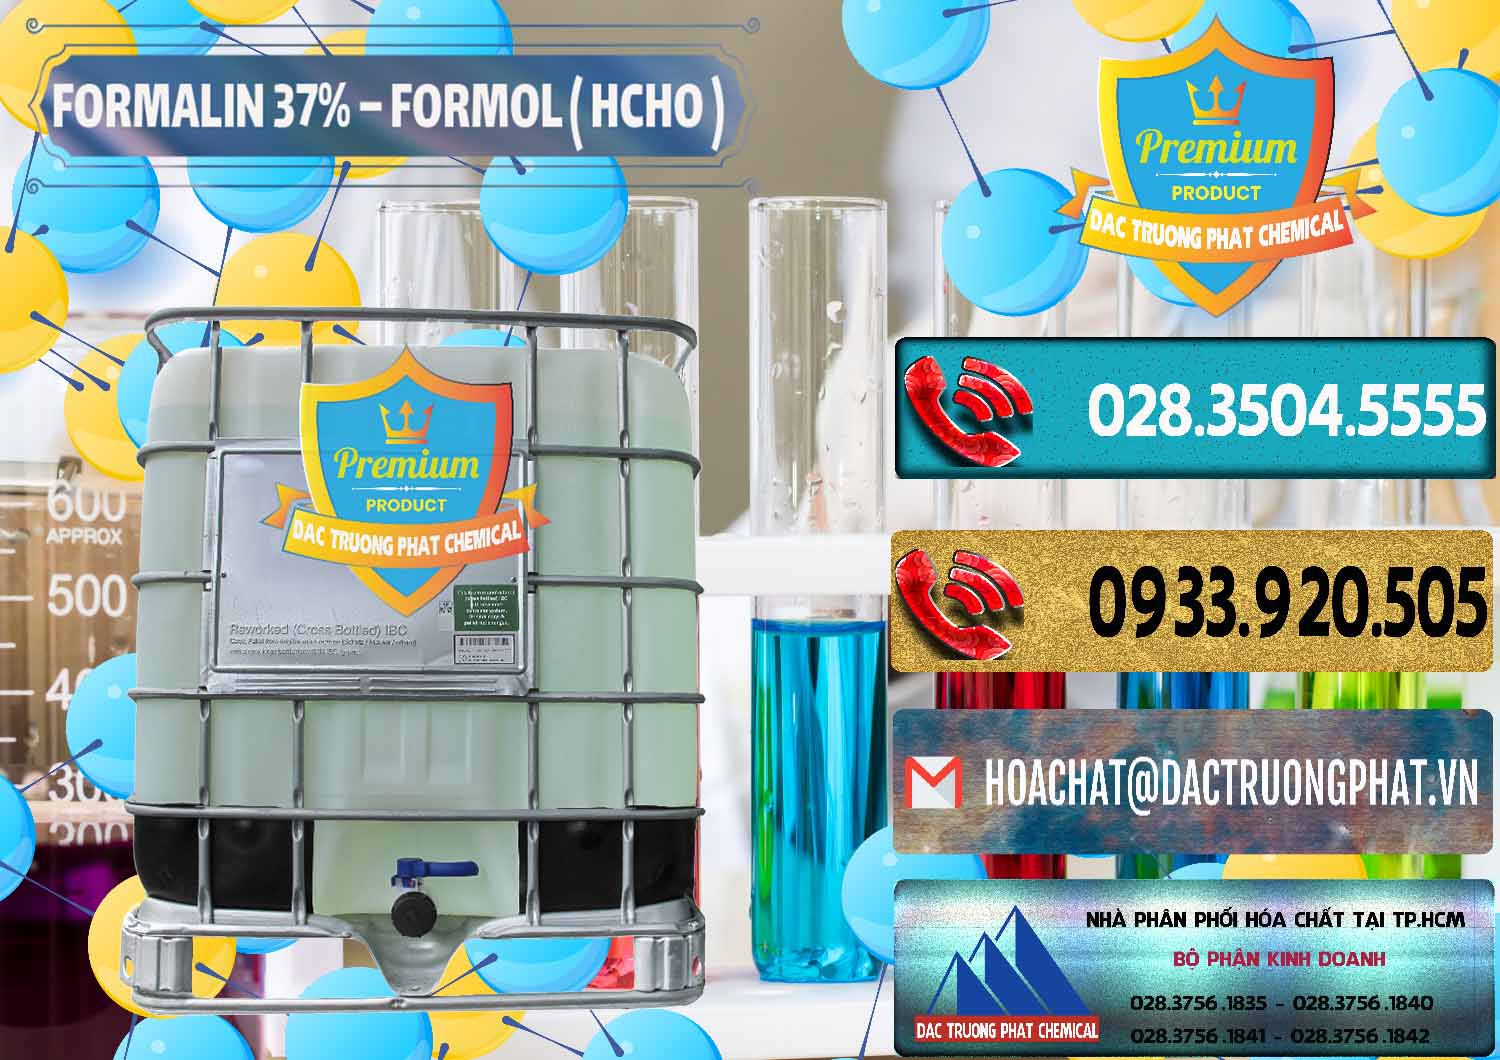 Cty chuyên bán & cung cấp Formalin - Formol ( HCHO ) 37% Việt Nam - 0187 - Cty kinh doanh & bán hóa chất tại TP.HCM - hoachatdetnhuom.com